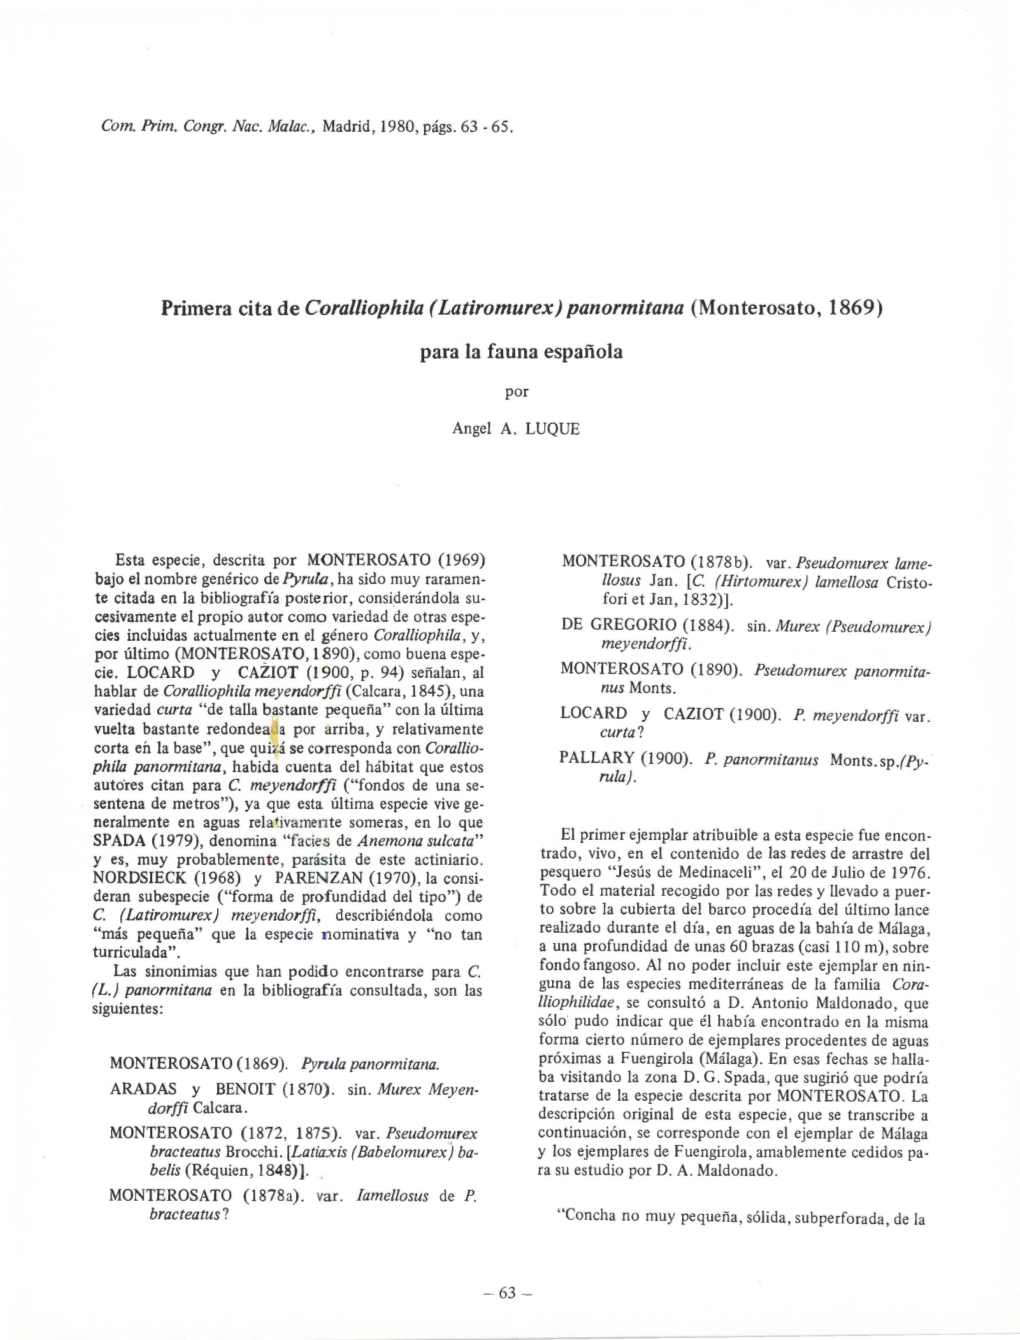 Primera Cita De Coralliophila (Latiromurex) Panormitana (Monterosato, 1869)